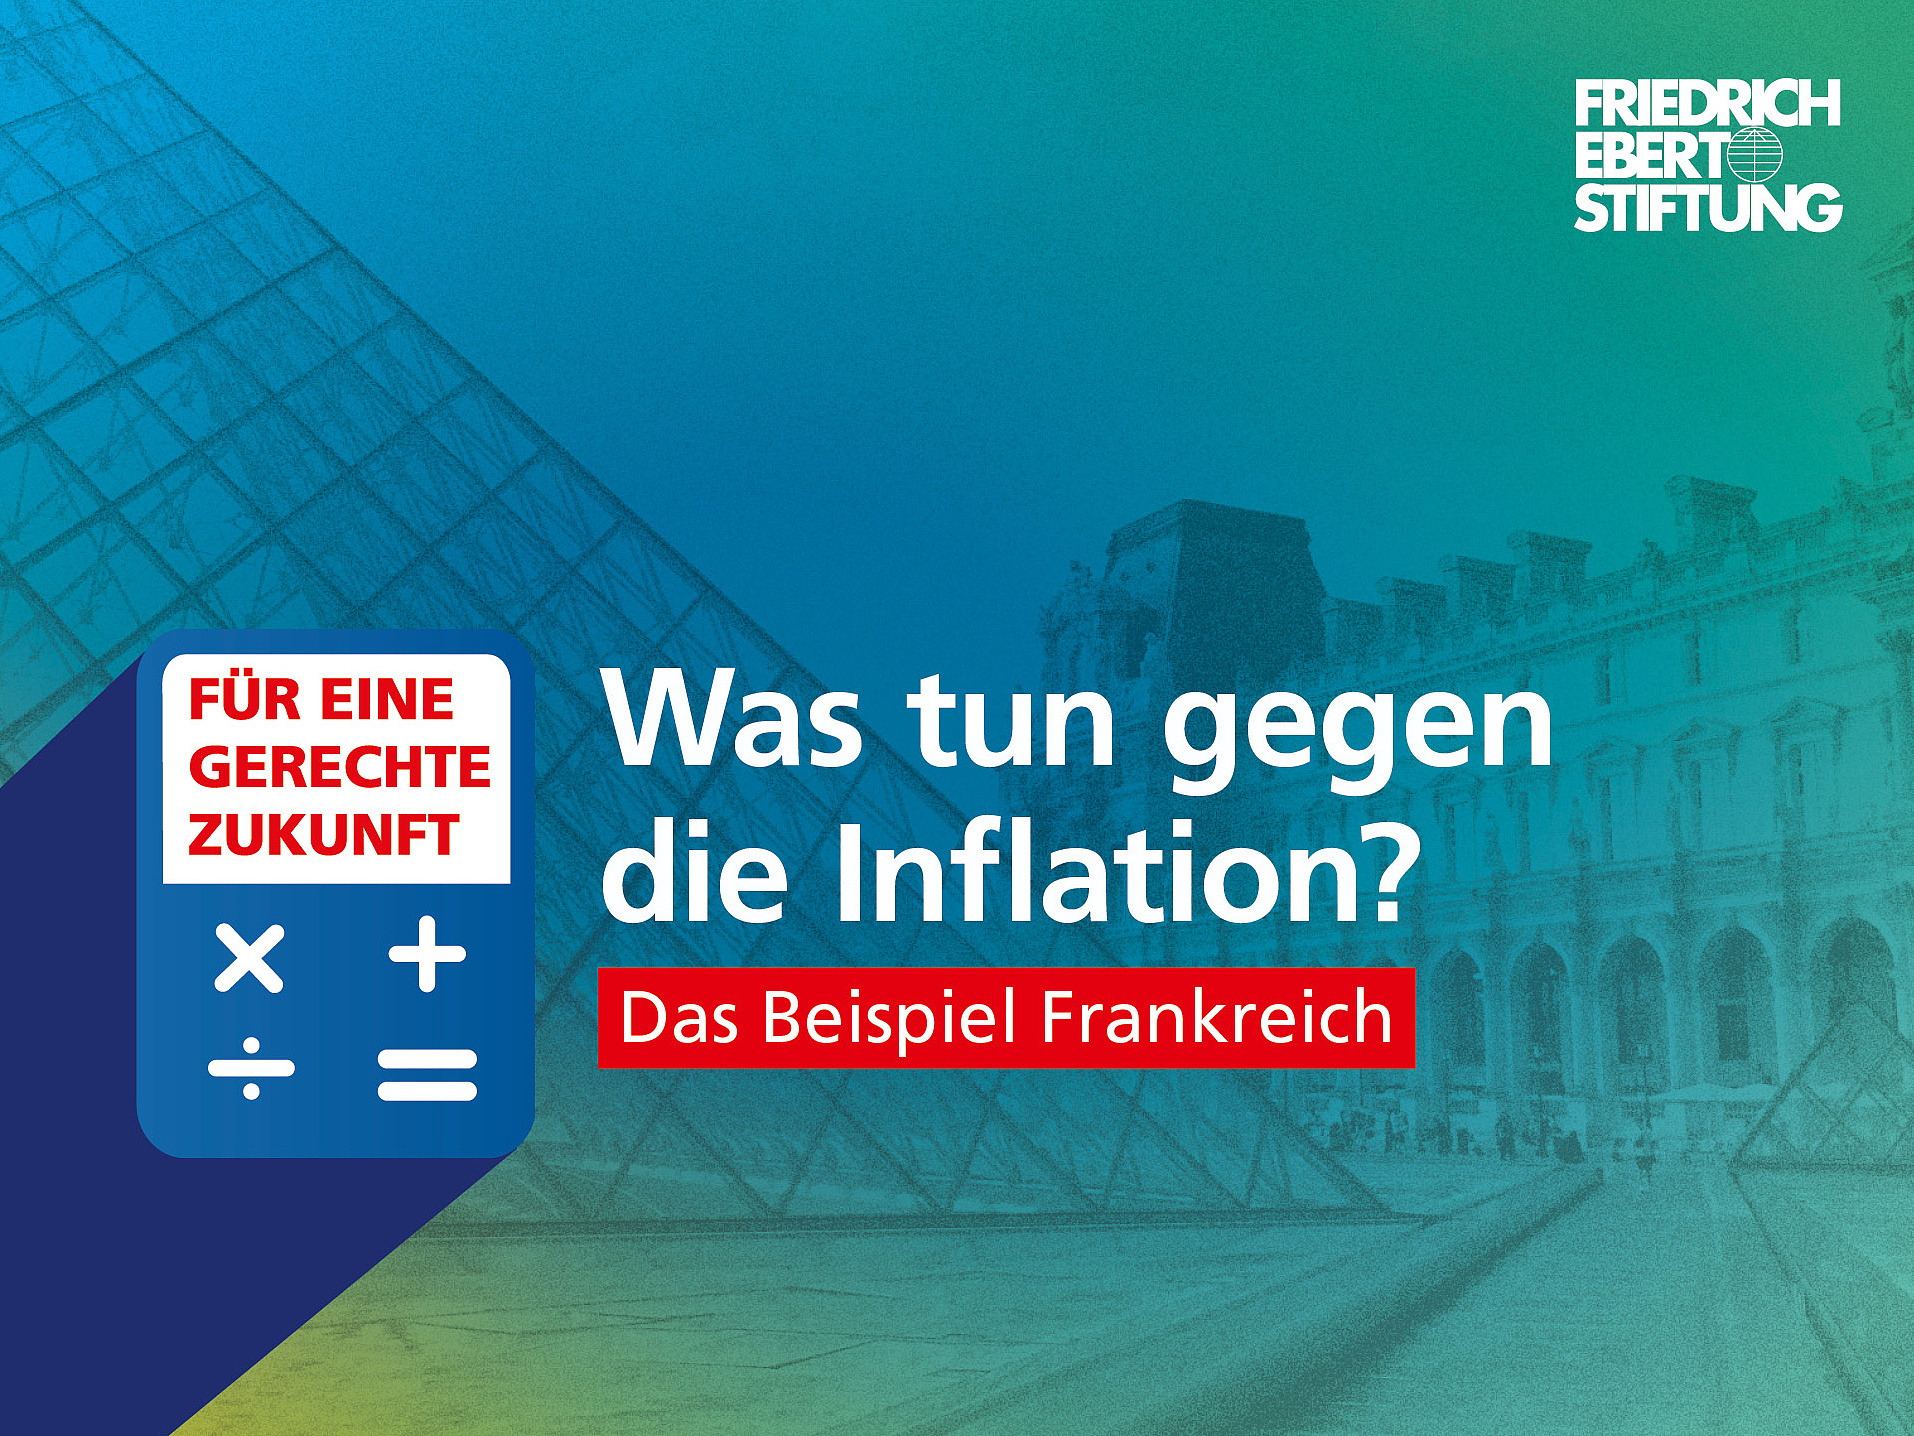 Blau-grün-gelb verwischter Hintergrund. Darauf der weiße Schriftzug "Was tun gegen die Inflation? Das Beispiel Frankreich". 